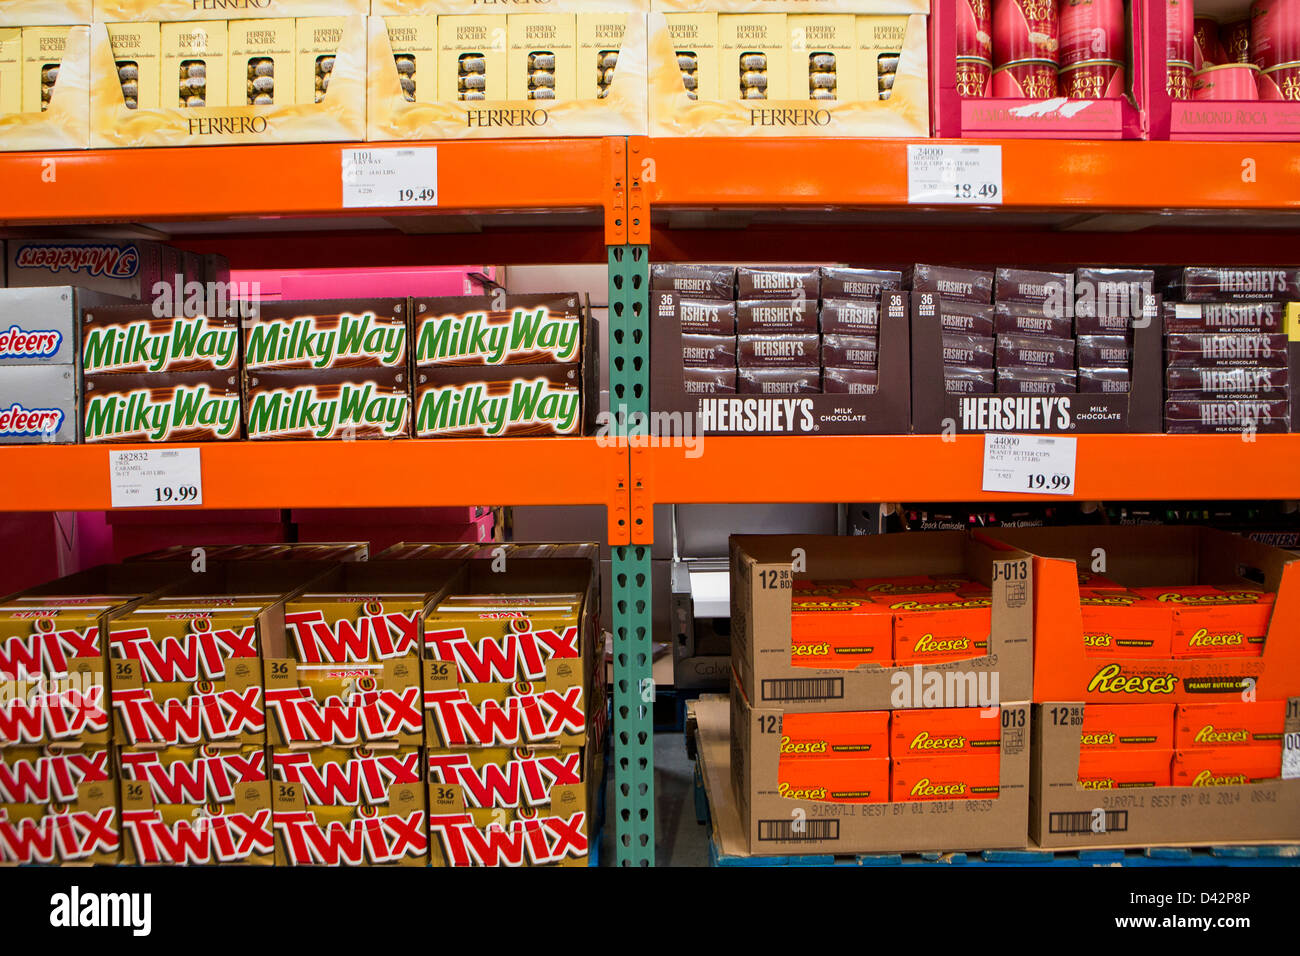 Via Lattea, Reese's Burro di arachidi tazze, Twix e Hershey's barre sul display alla Costco Wholesale Club magazzino. Foto Stock